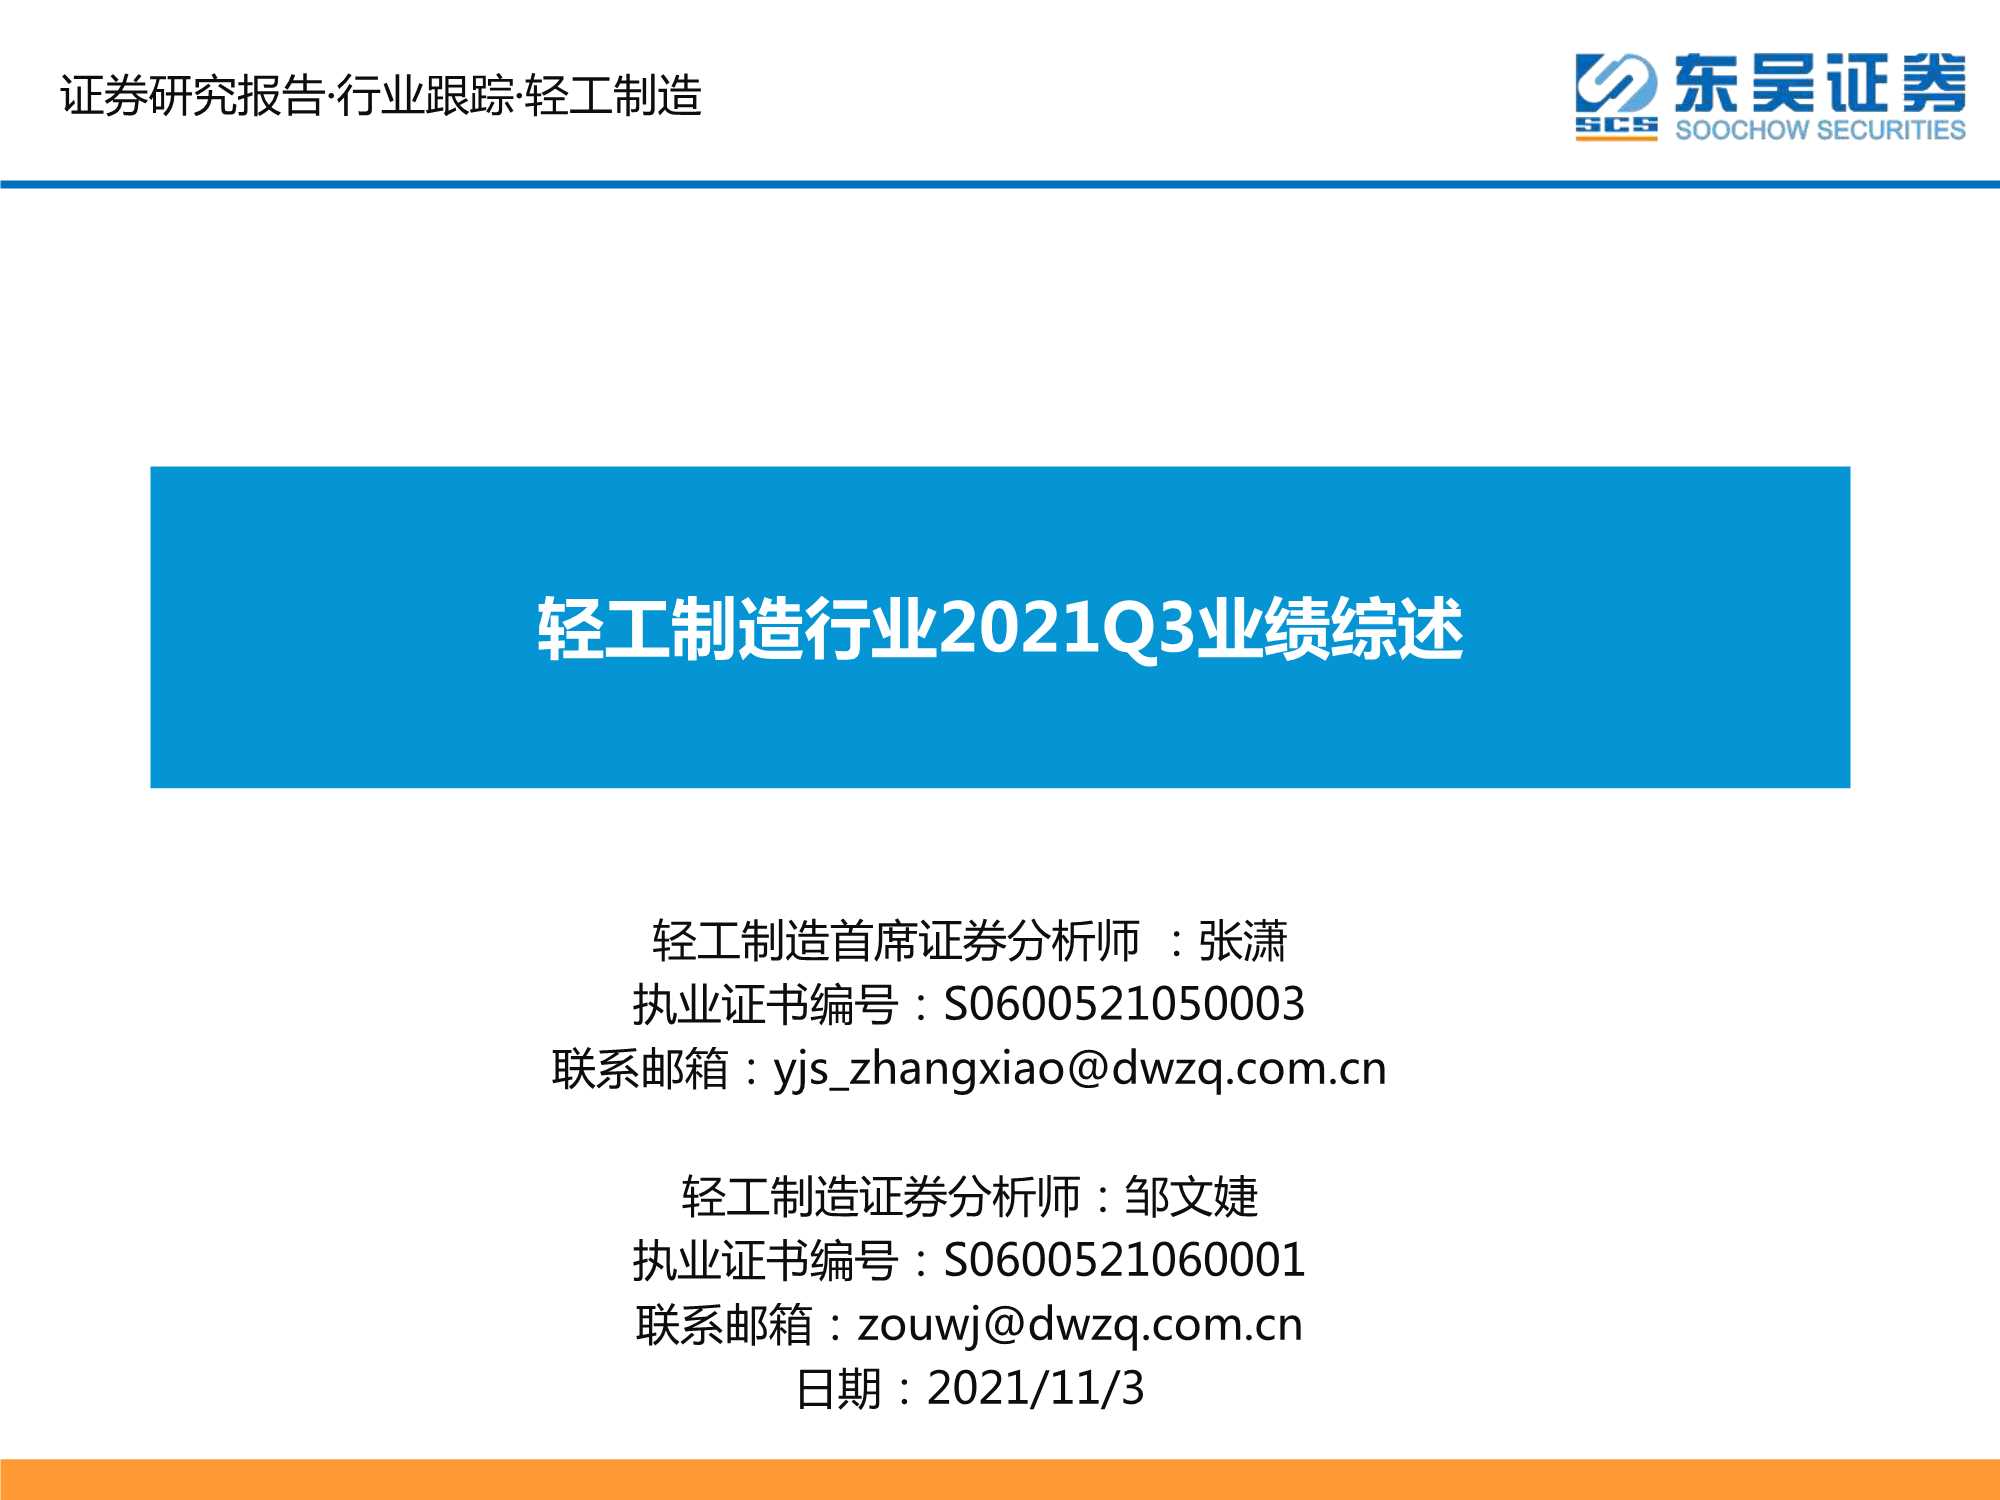 东吴证券-轻工制造行业2021Q3业绩综述-20211103-32页